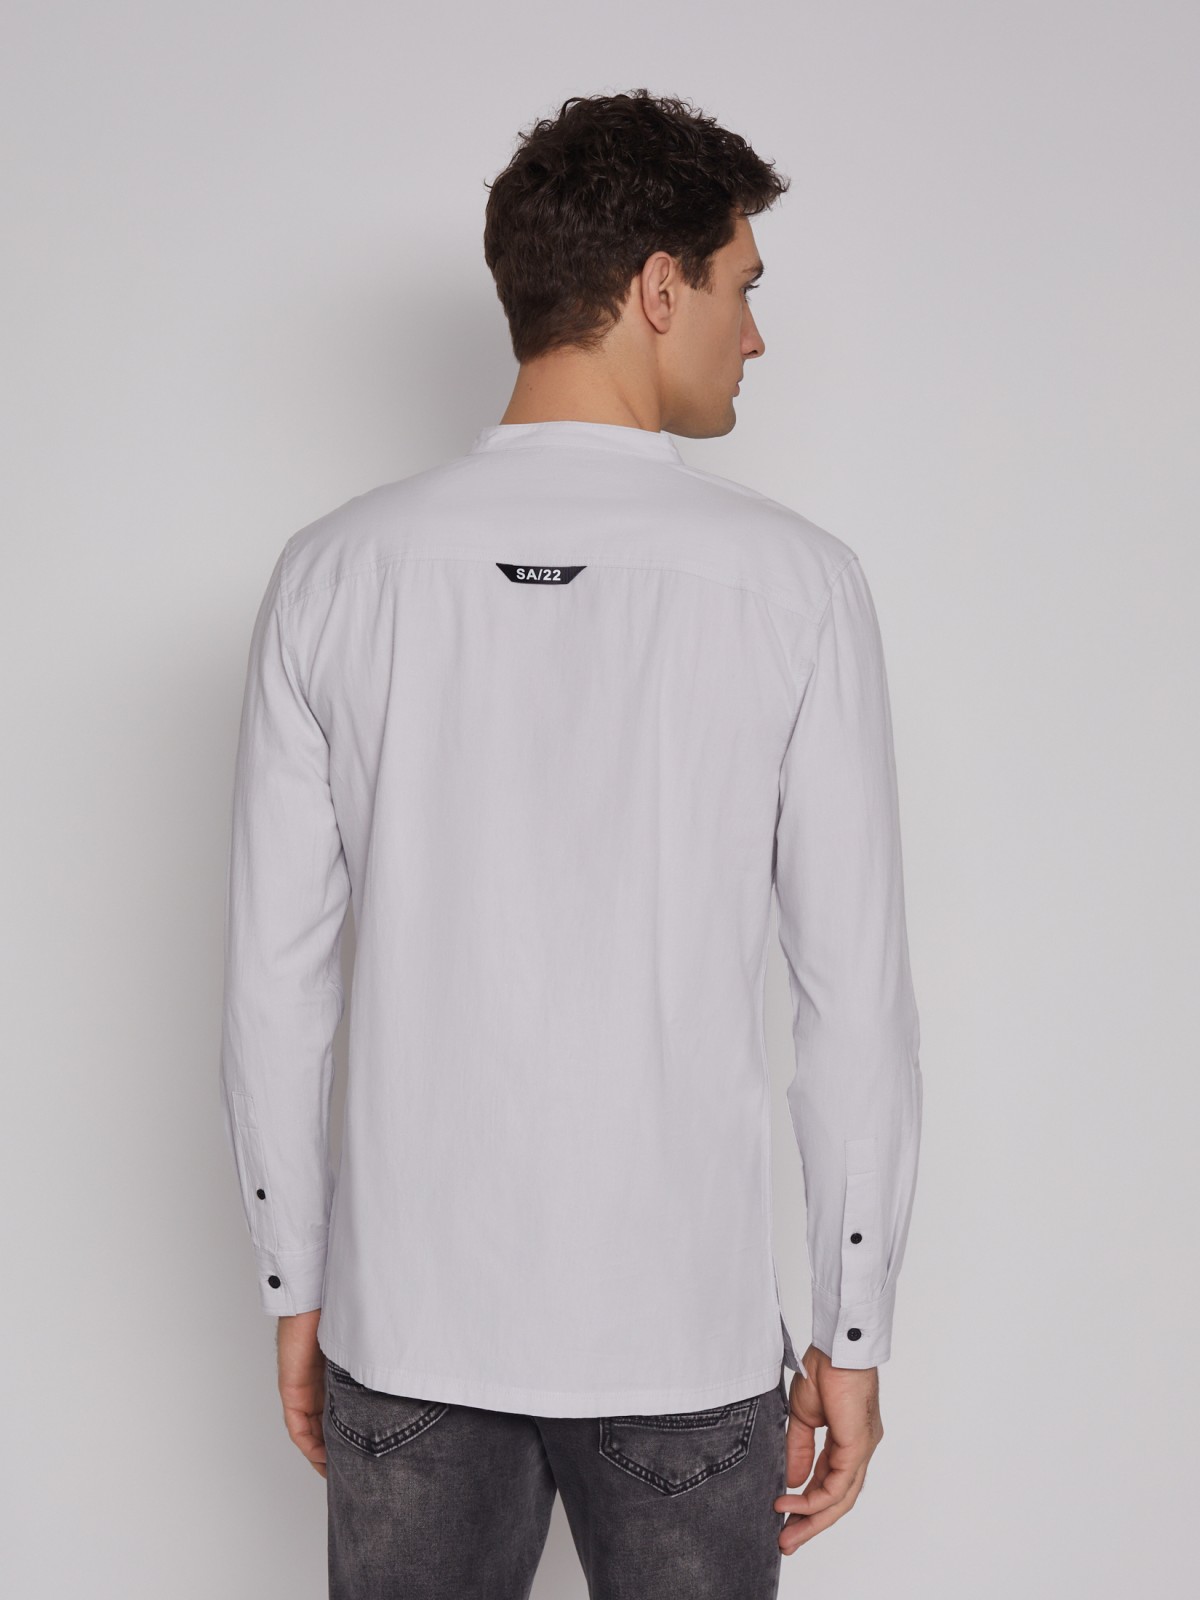 Рубашка с воротником-стойкой zolla 21221217Y031, цвет светло-серый, размер S - фото 6